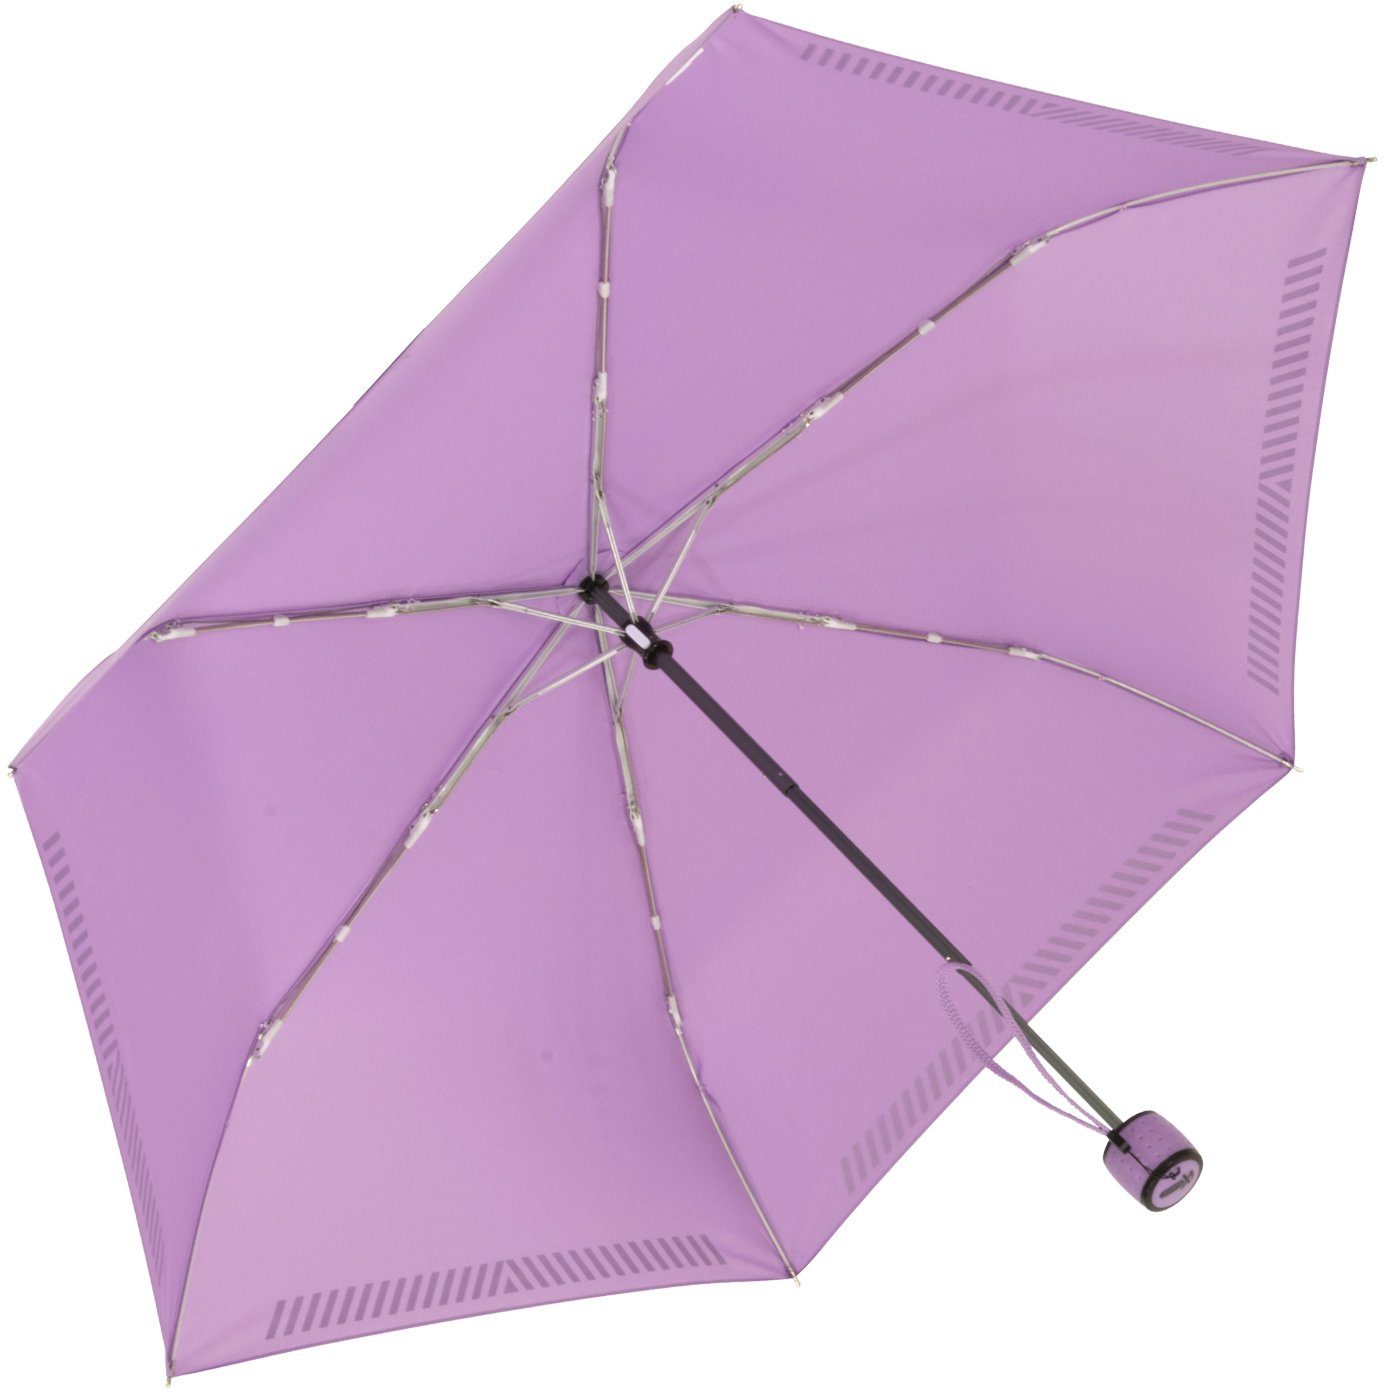 Kinderschirm Taschenregenschirm reflektierend Mini berry-light leicht, iX-brella Safety Reflex extra